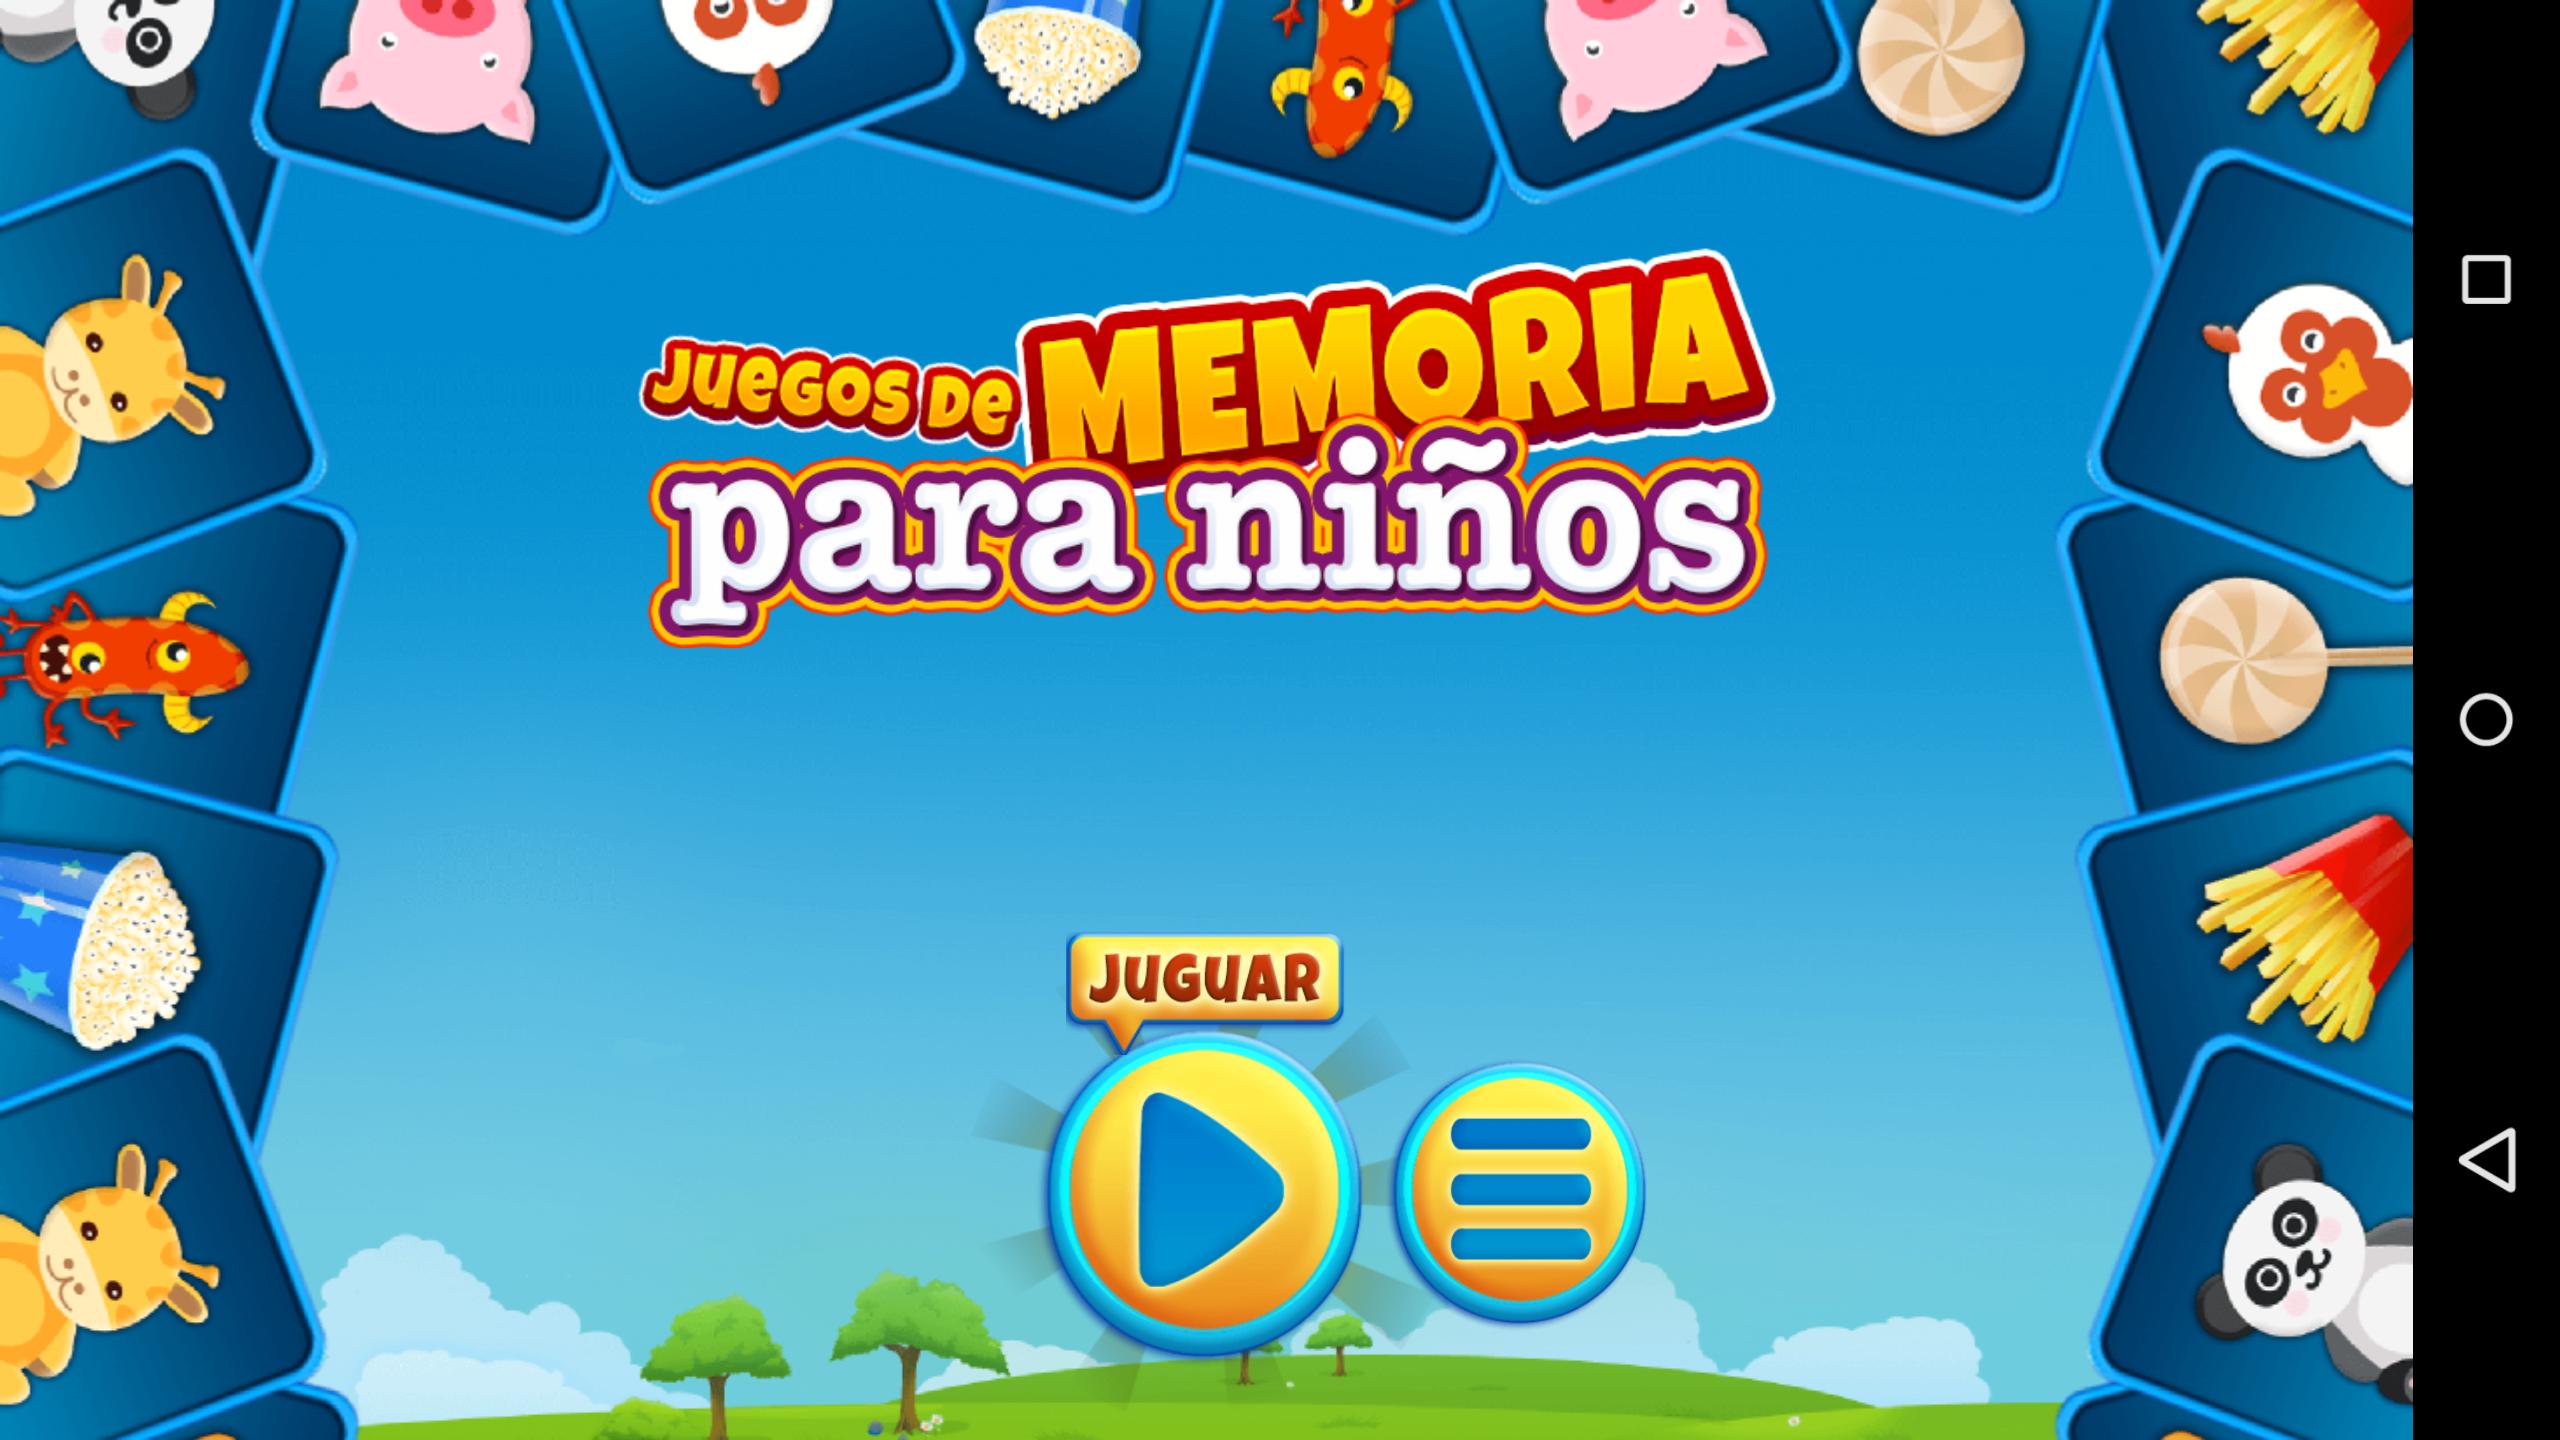 Juego de Memoria para Niños for Android - APK Download